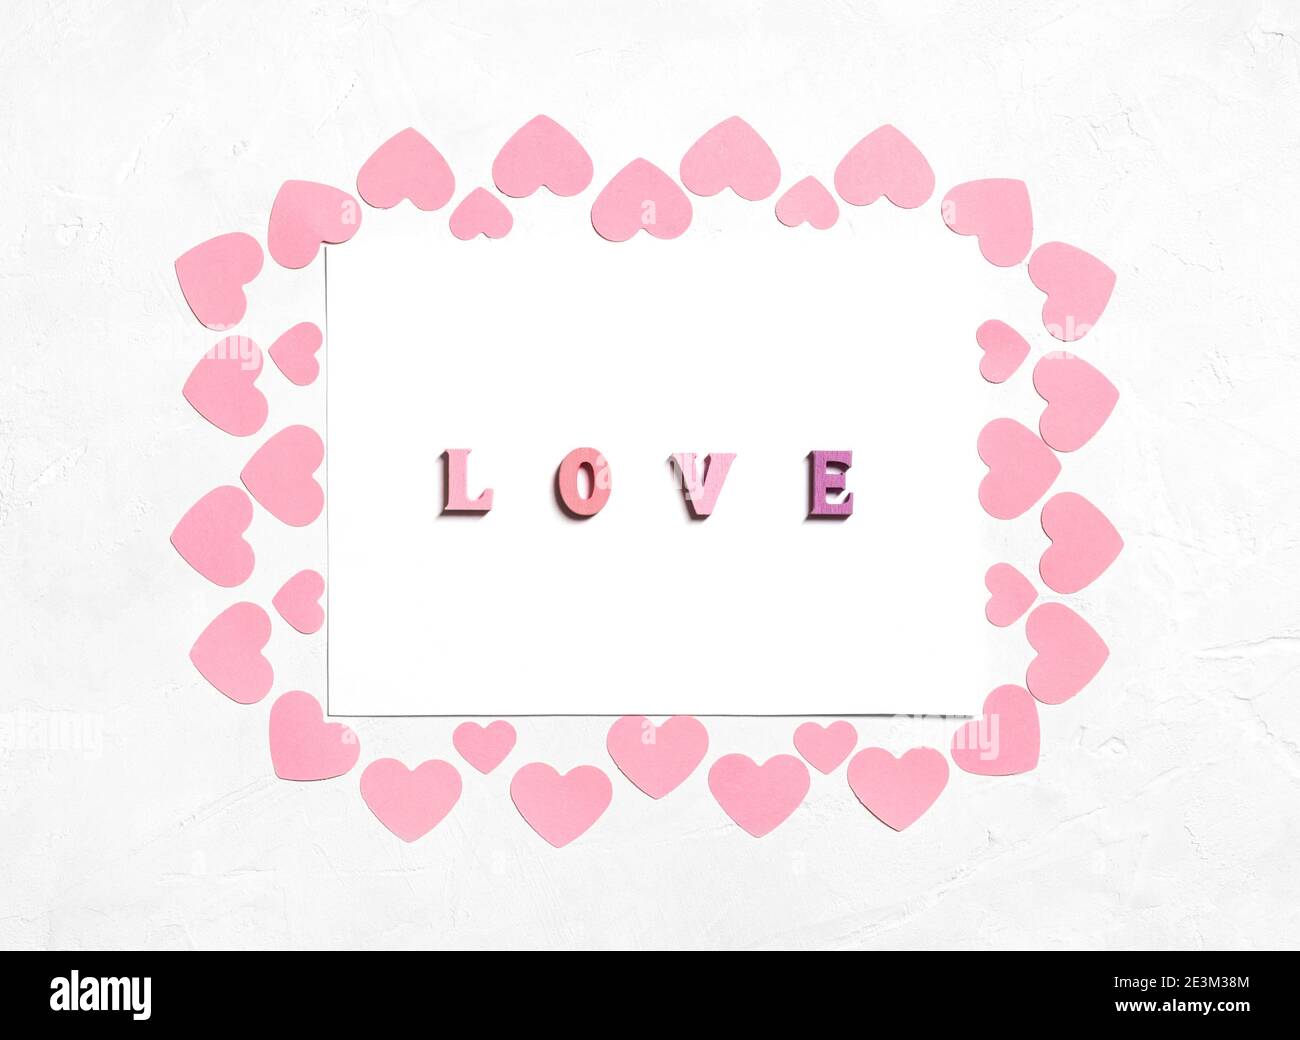 Biglietto d'auguri per San Valentino con cuori rosa e l'iscrizione amore. Giorno di San Valentino, concetto di giorno delle madri. Vista dall'alto. Foto Stock